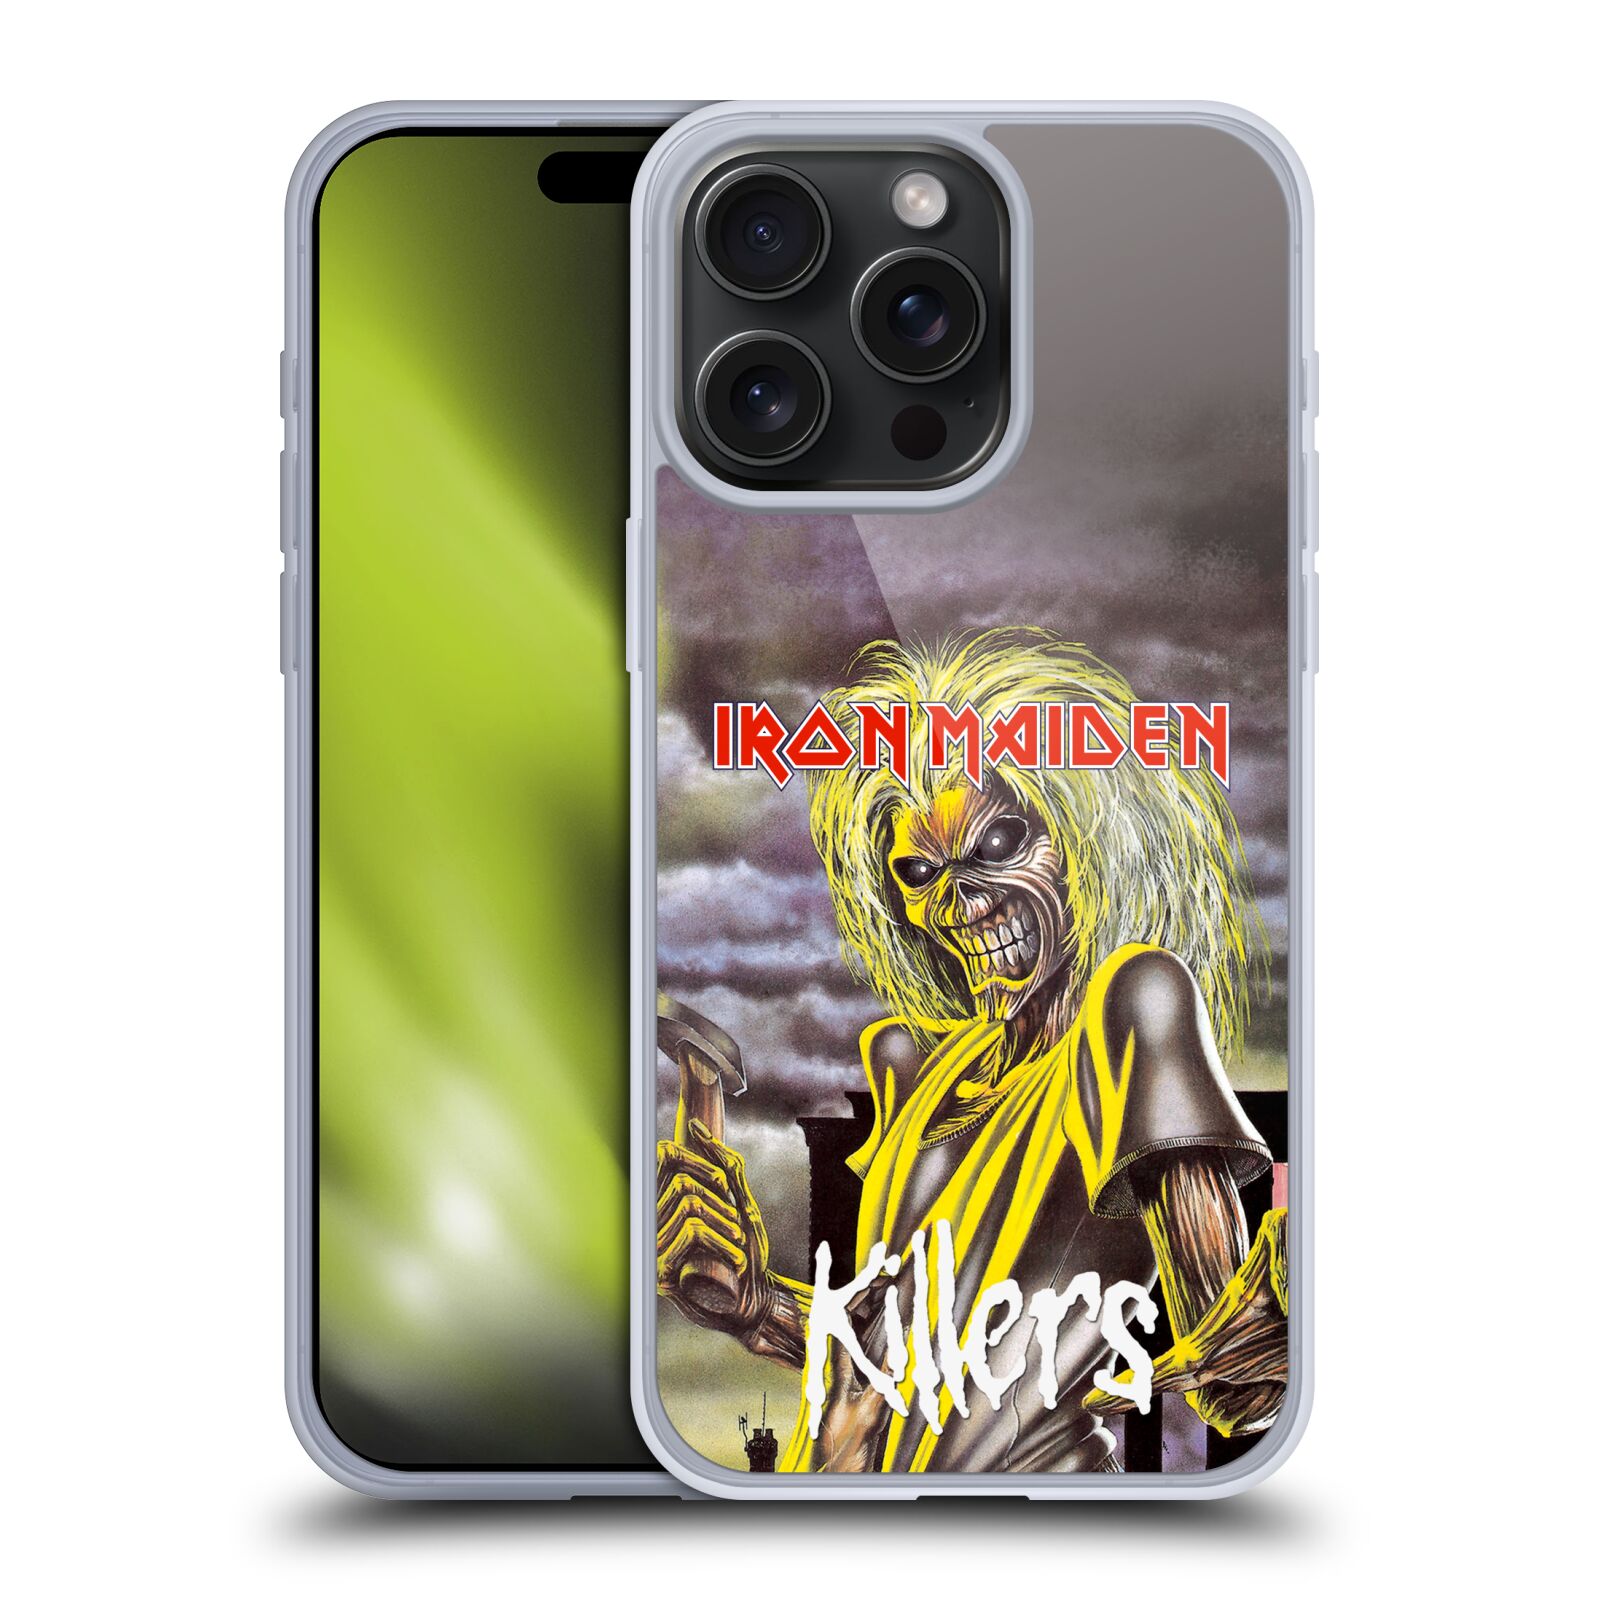 Silikonové lesklé pouzdro na mobil Apple iPhone 15 Pro Max - Head Case - Iron Maiden - Killers (Silikonový lesklý kryt, obal, pouzdro na mobilní telefon Apple iPhone 15 Pro Max s motivem Iron Maiden - Killers)